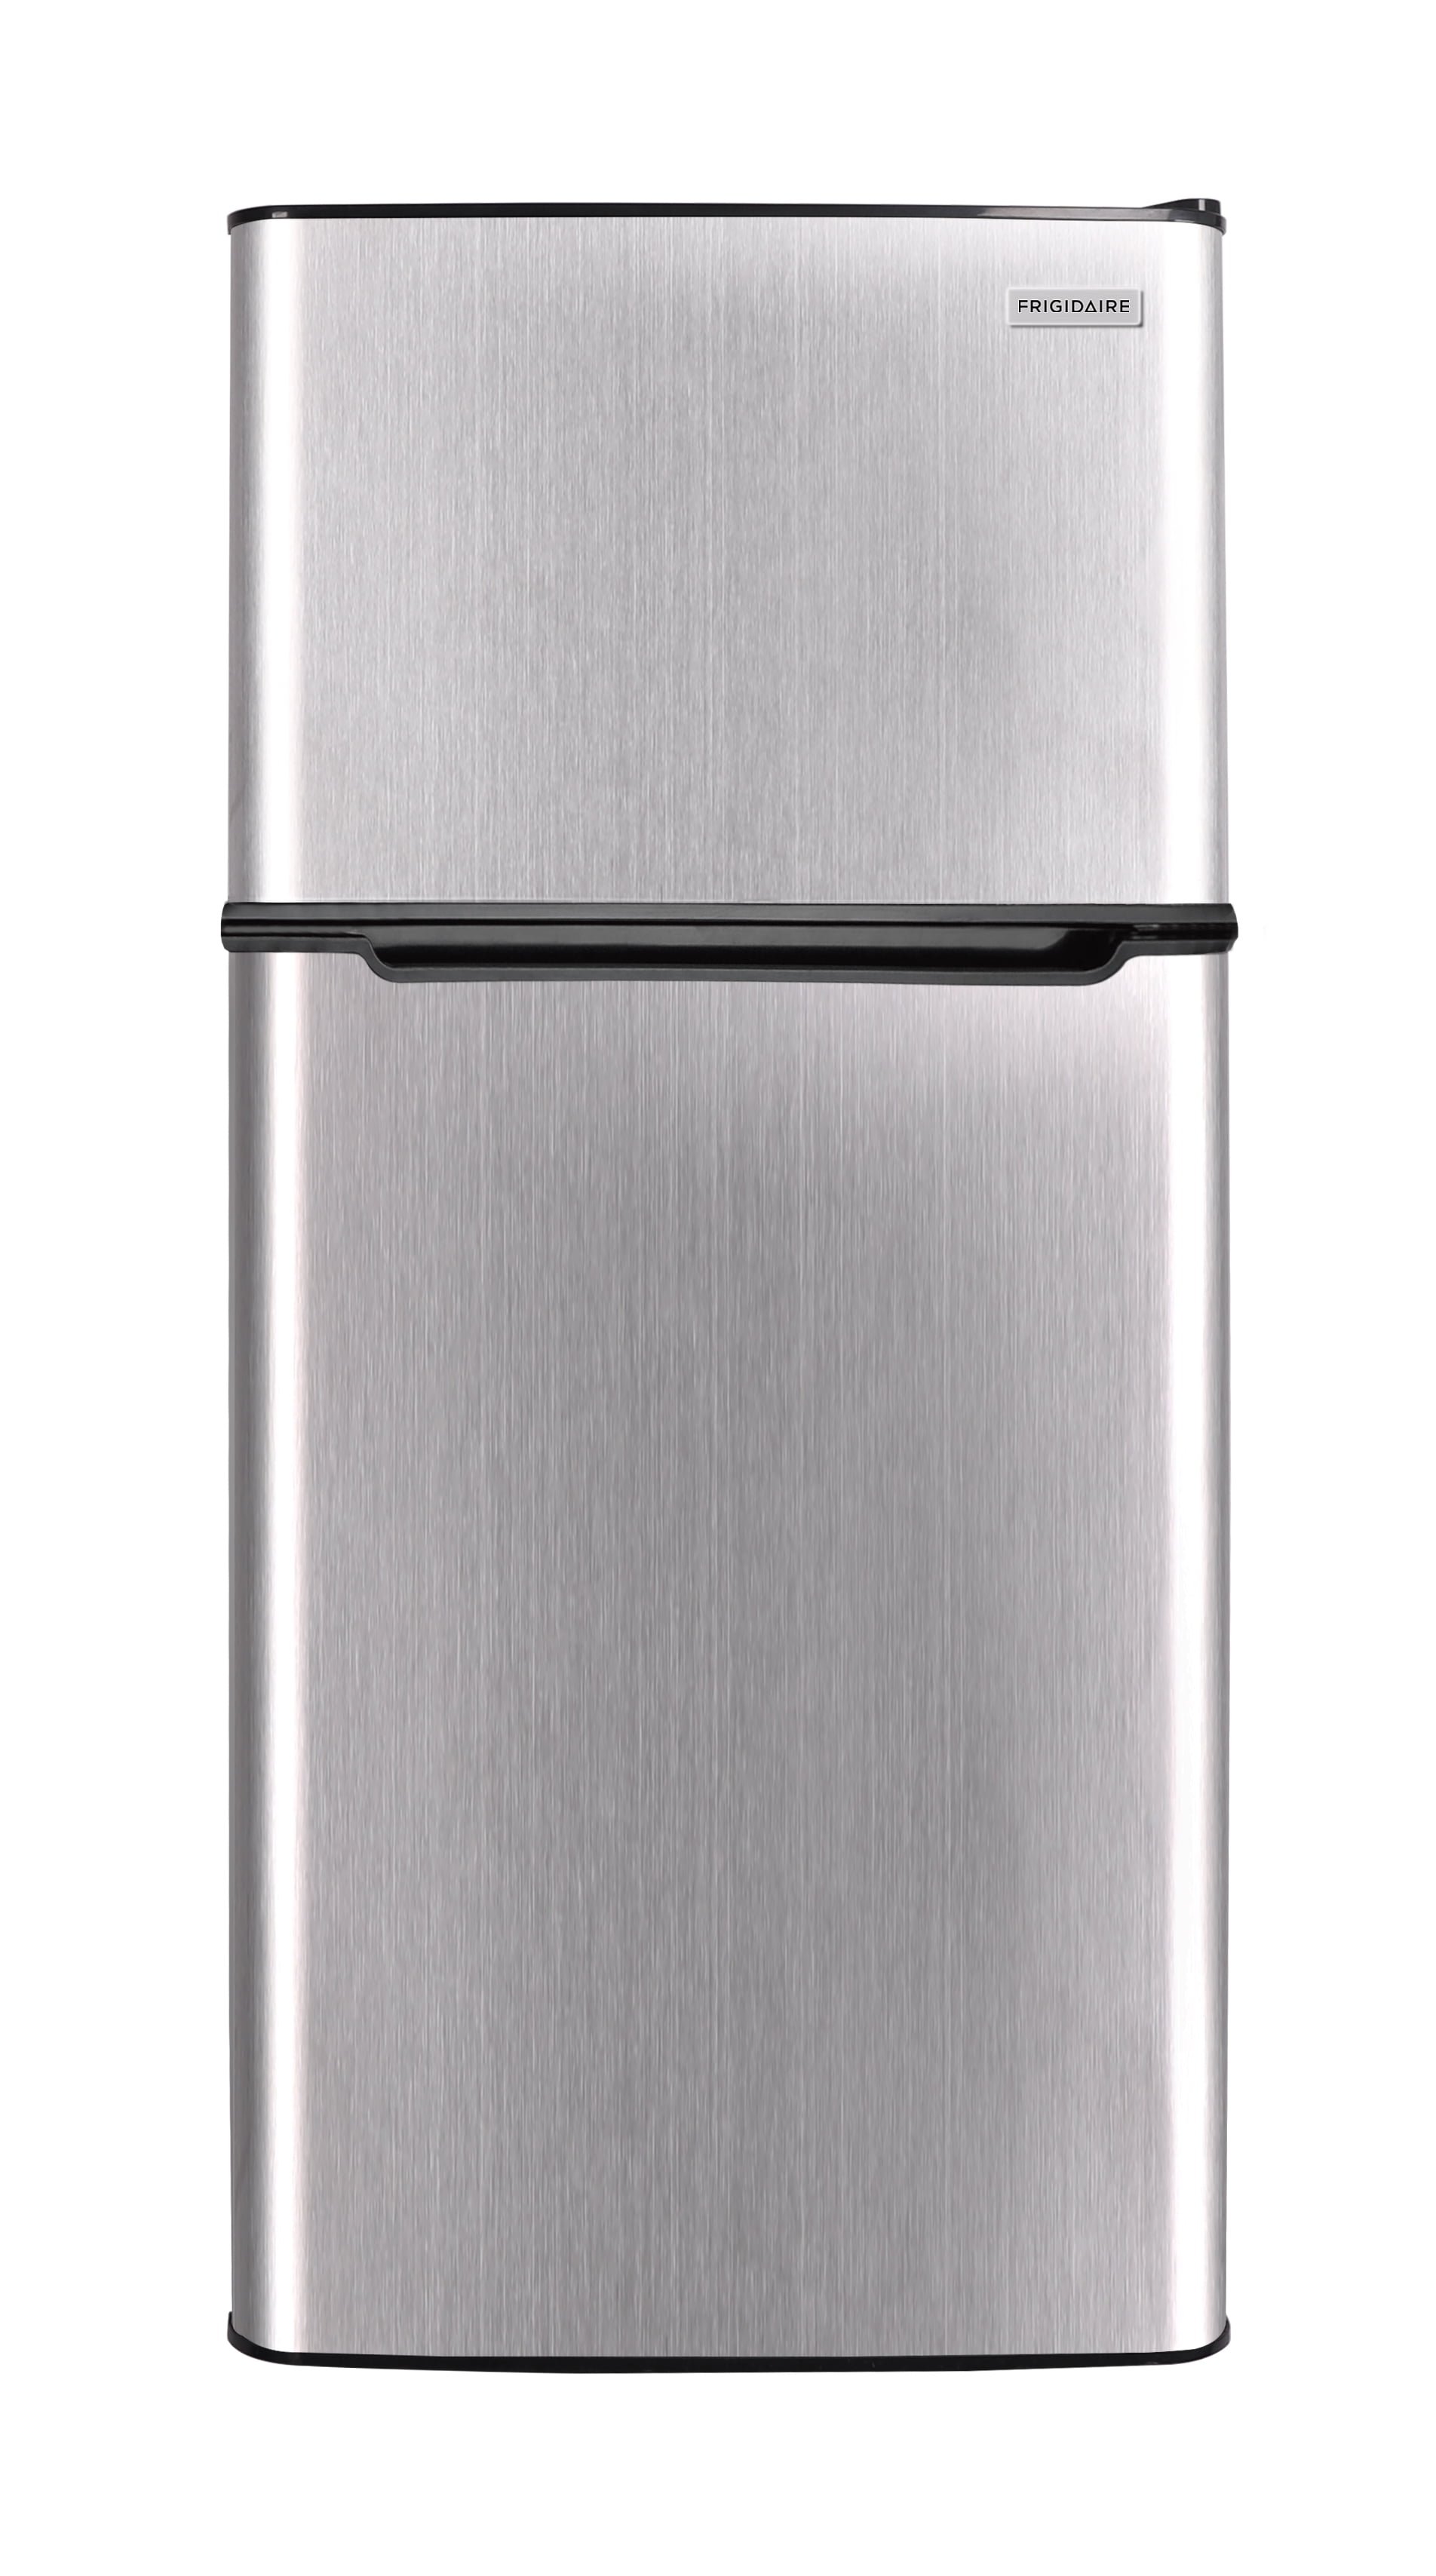 Frigidaire, 4.5 Cu. ft., 2 Door Compact Refrigerator-Chrome Trim, EFR463, Platinum